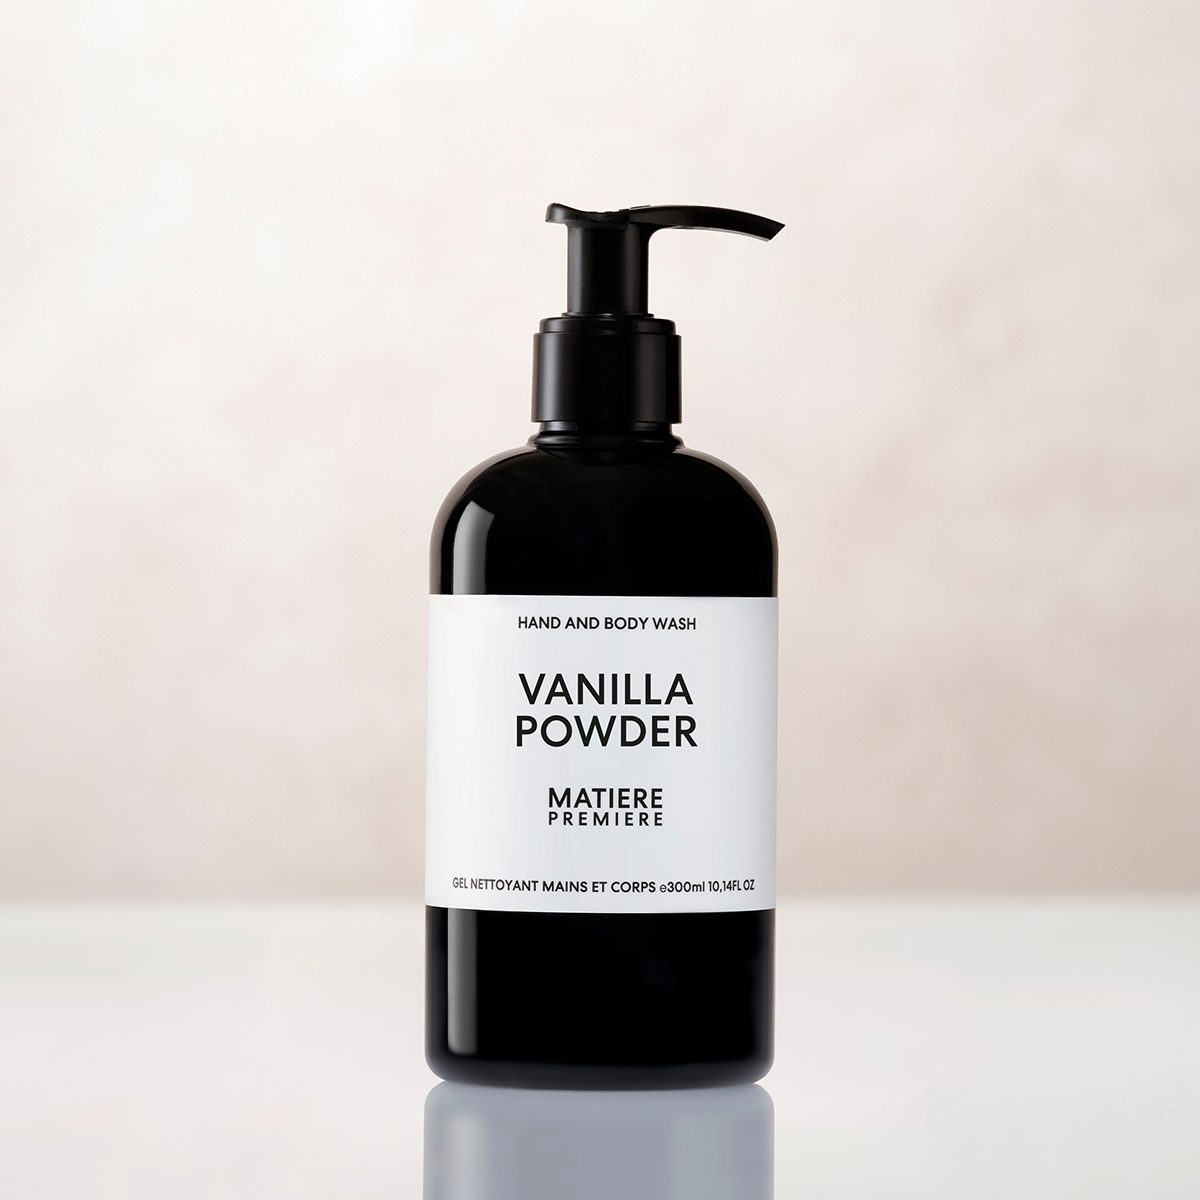 Matiere Premiere - Vanilla Powder Hand and Bodywash